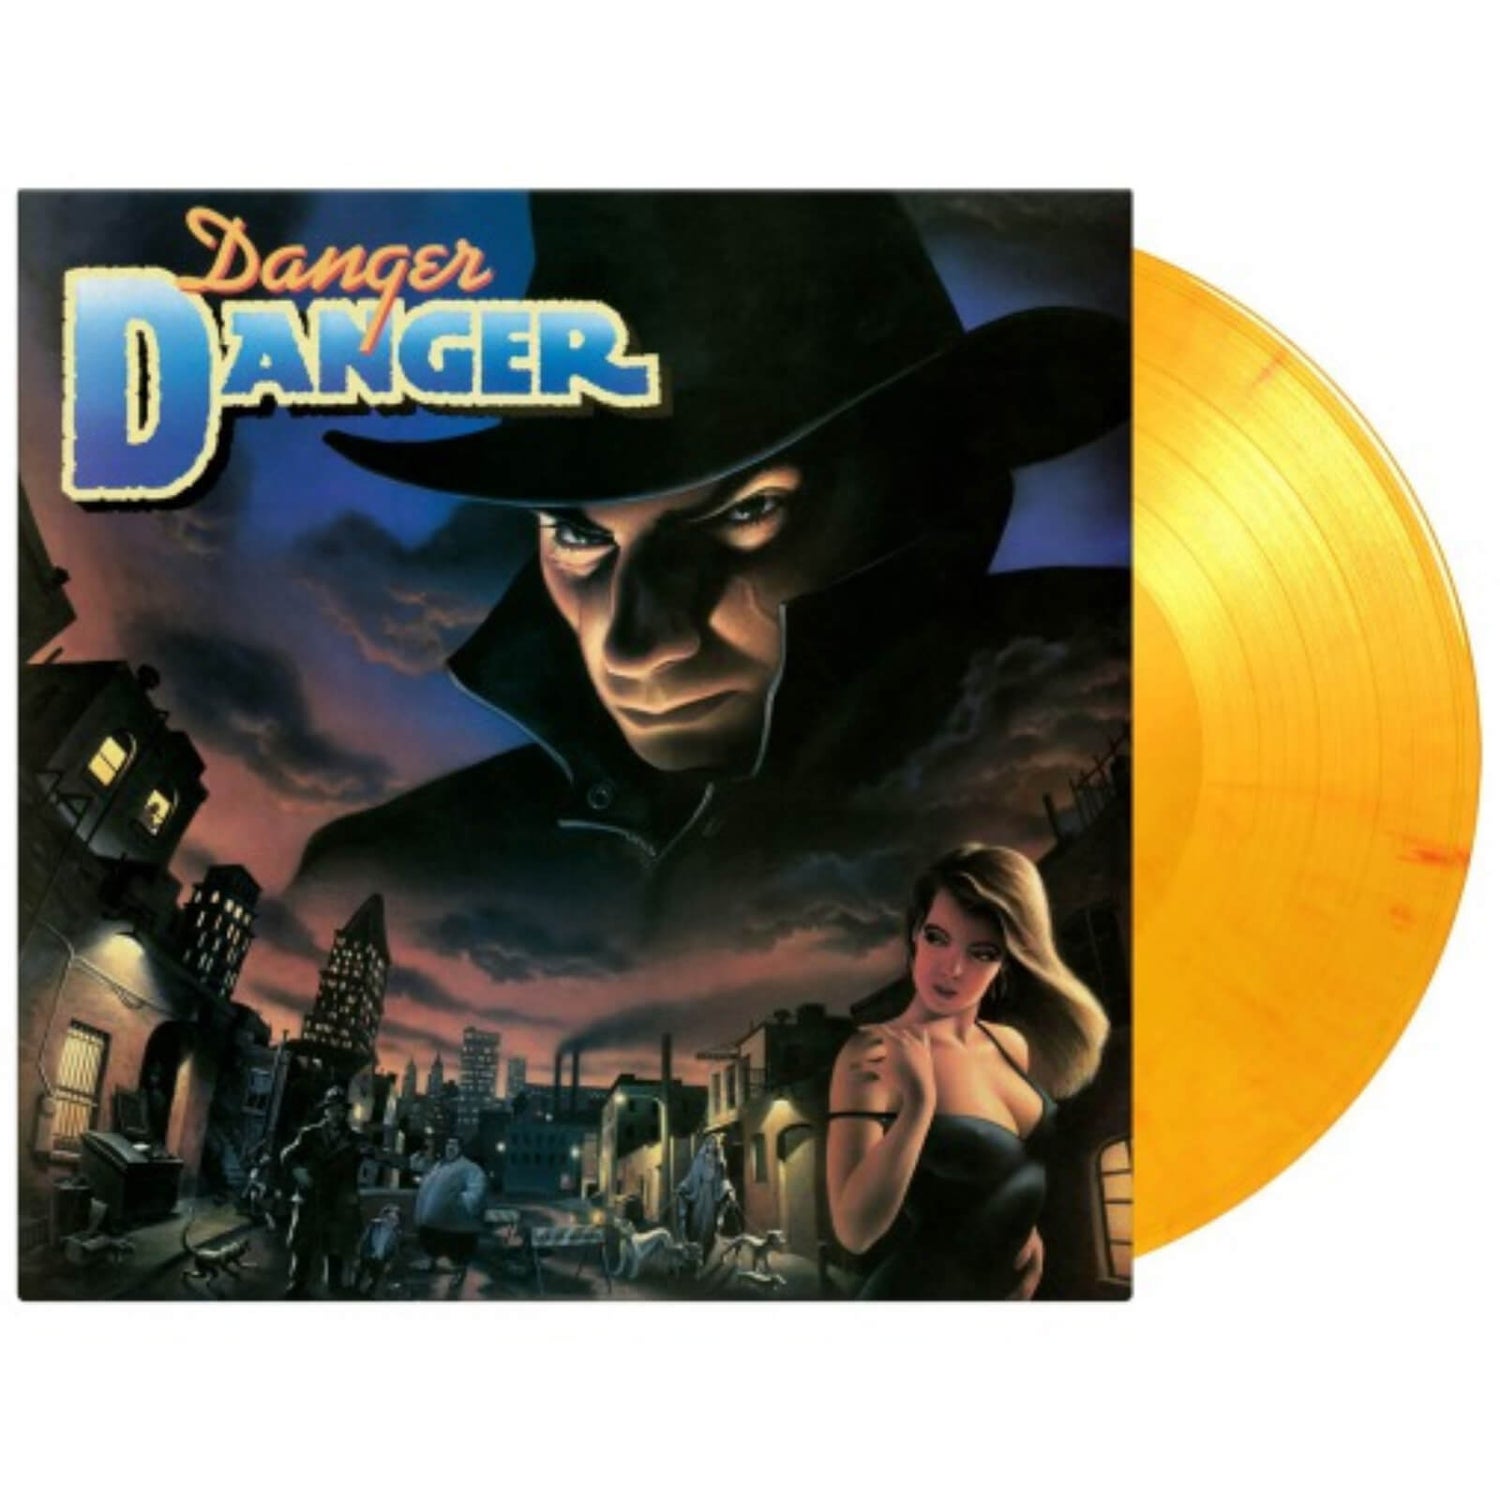 Danger Danger - Danger Danger 180g Vinyl (Flaming Orange)